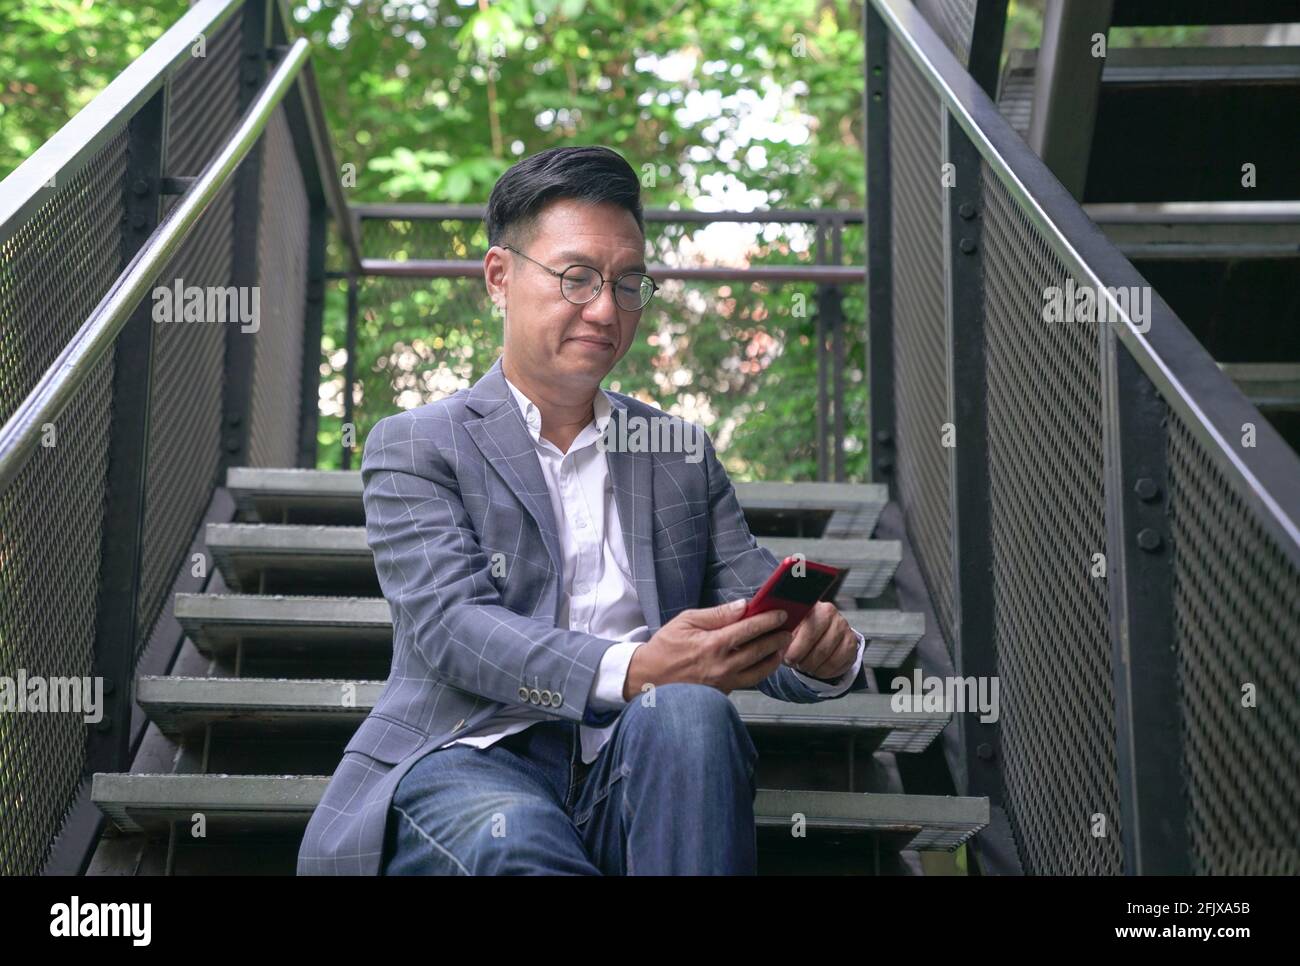 Homme d'affaires assis dans les escaliers et surfant sur son téléphone. Urbain avec fond vert. Banque D'Images